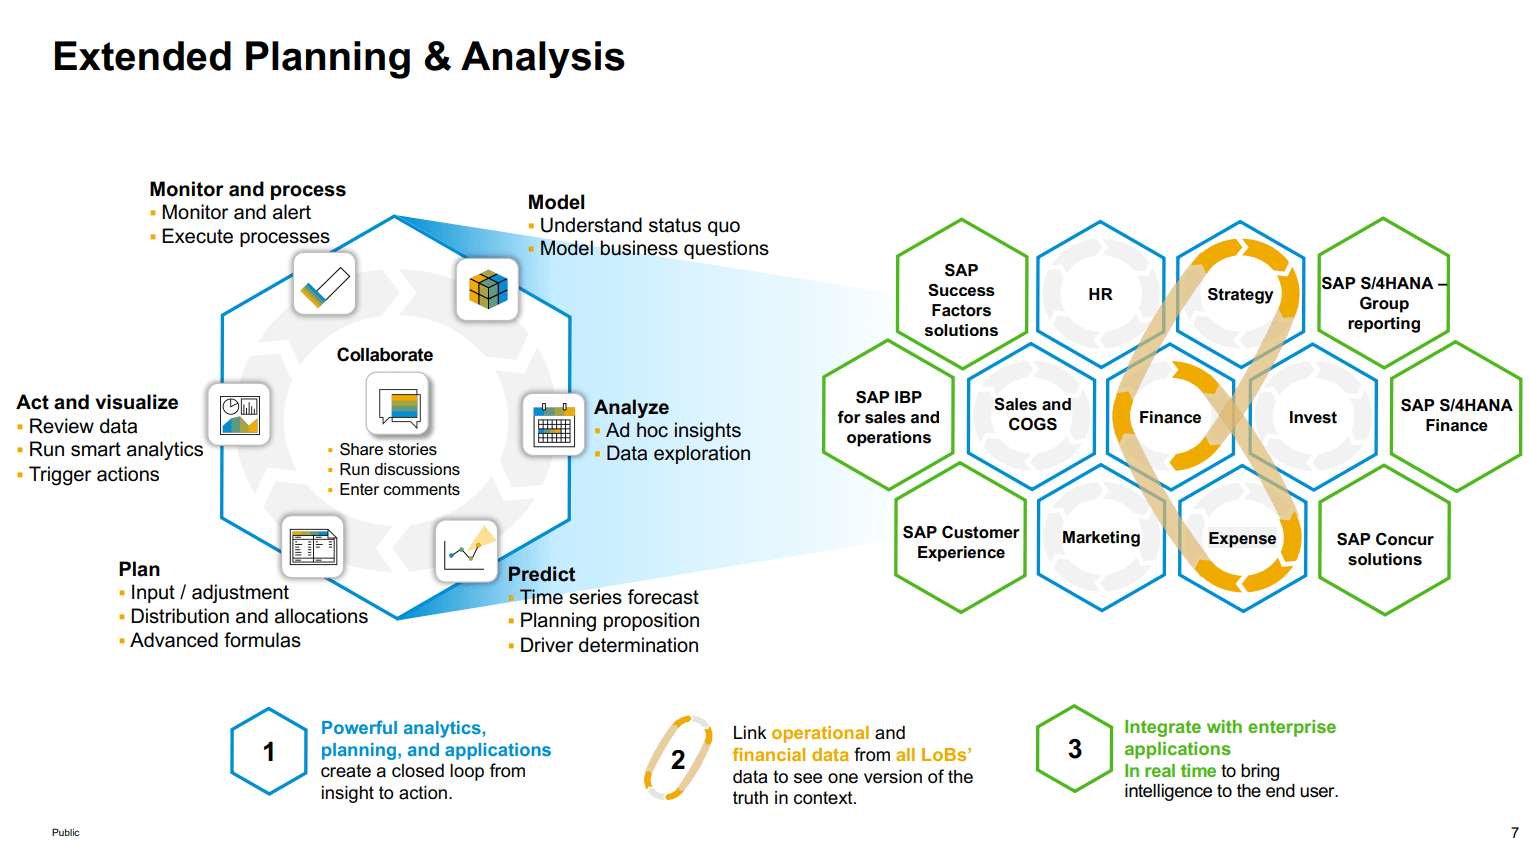 Darstellung des xP&A Modells von SAP, Extended Planning & Analysis verknüpft Teilpläne und bietet eine holistische Sicht